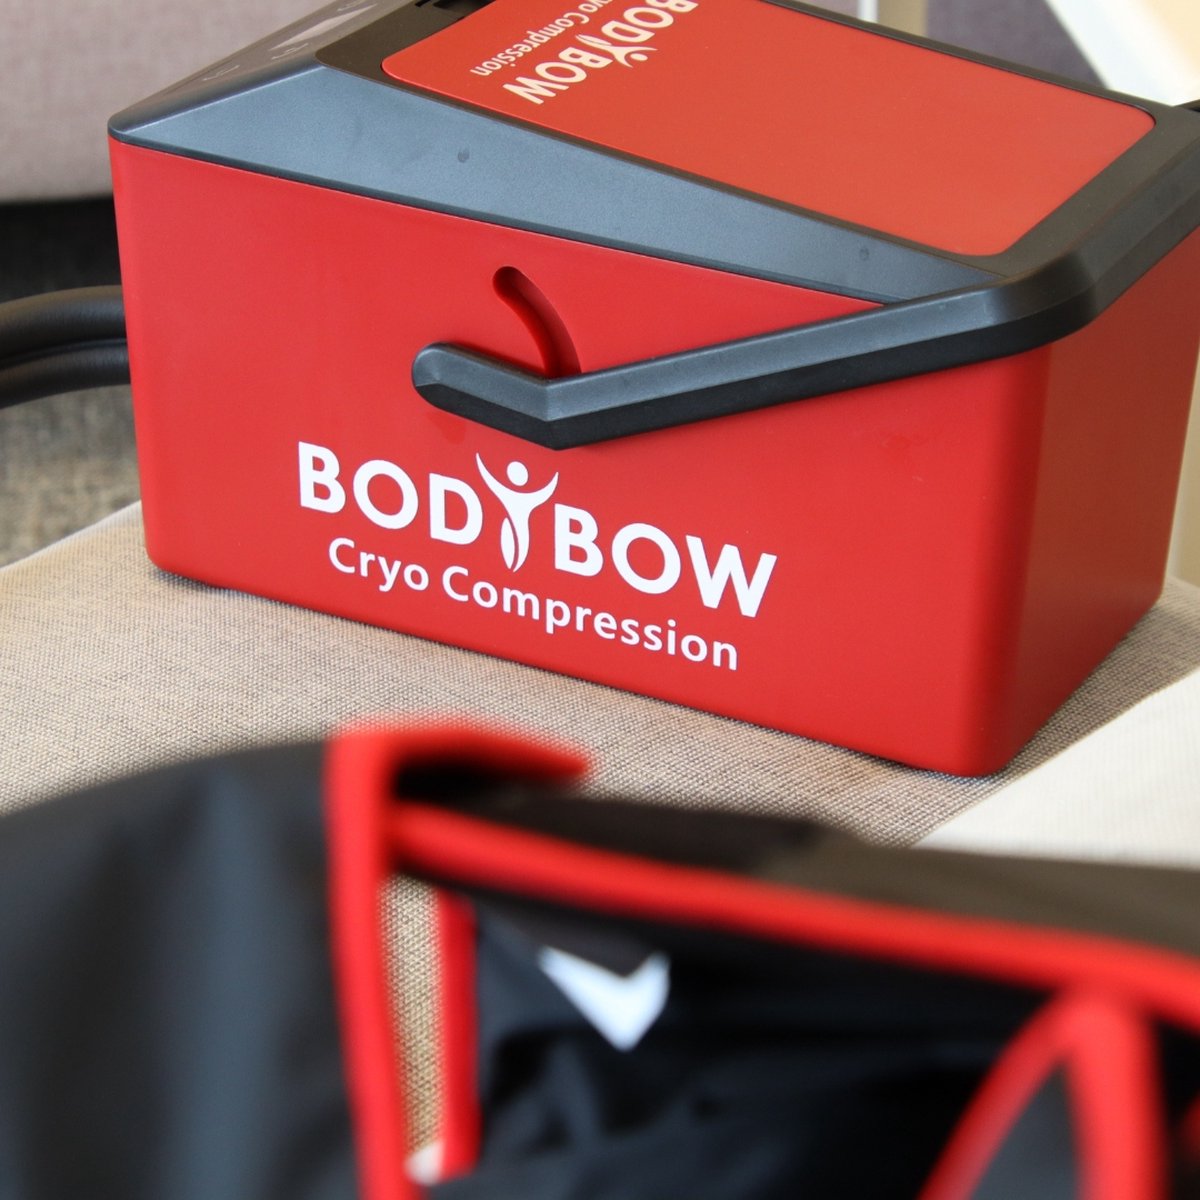 Bodybow Cryo Compression unit